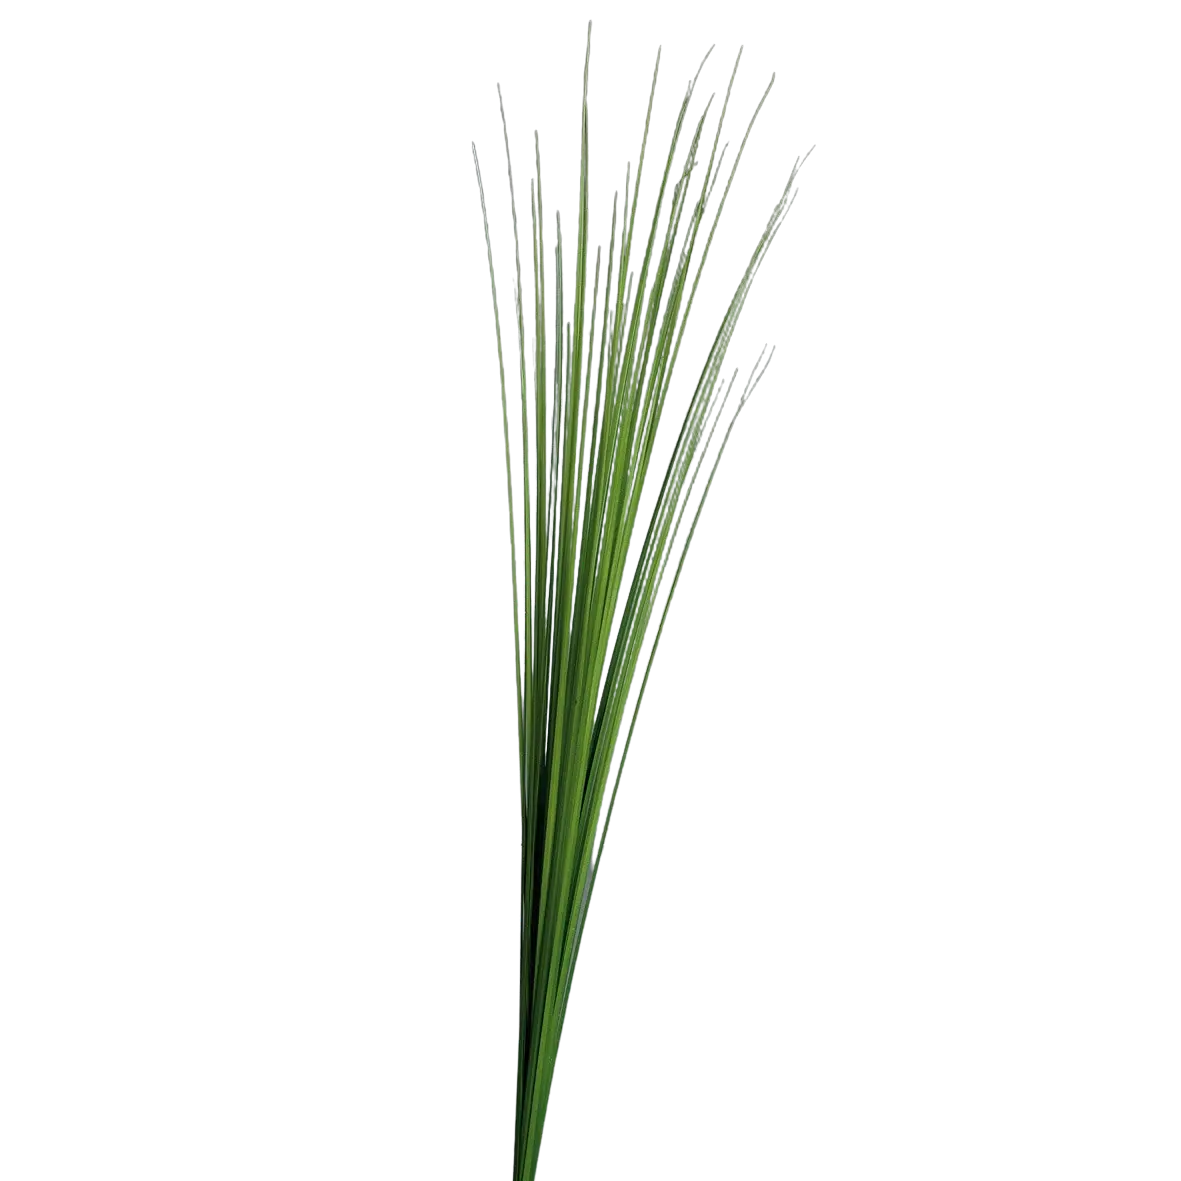 Hochwertiges Kunstgras auf transparentem Hintergrund mit echt wirkenden Kunstblättern in natürlicher Anordnung. Künstliches Isolepsis Gras - Arianna hat die Farbe Natur und ist 70 cm hoch. | aplanta Kunstpflanzen